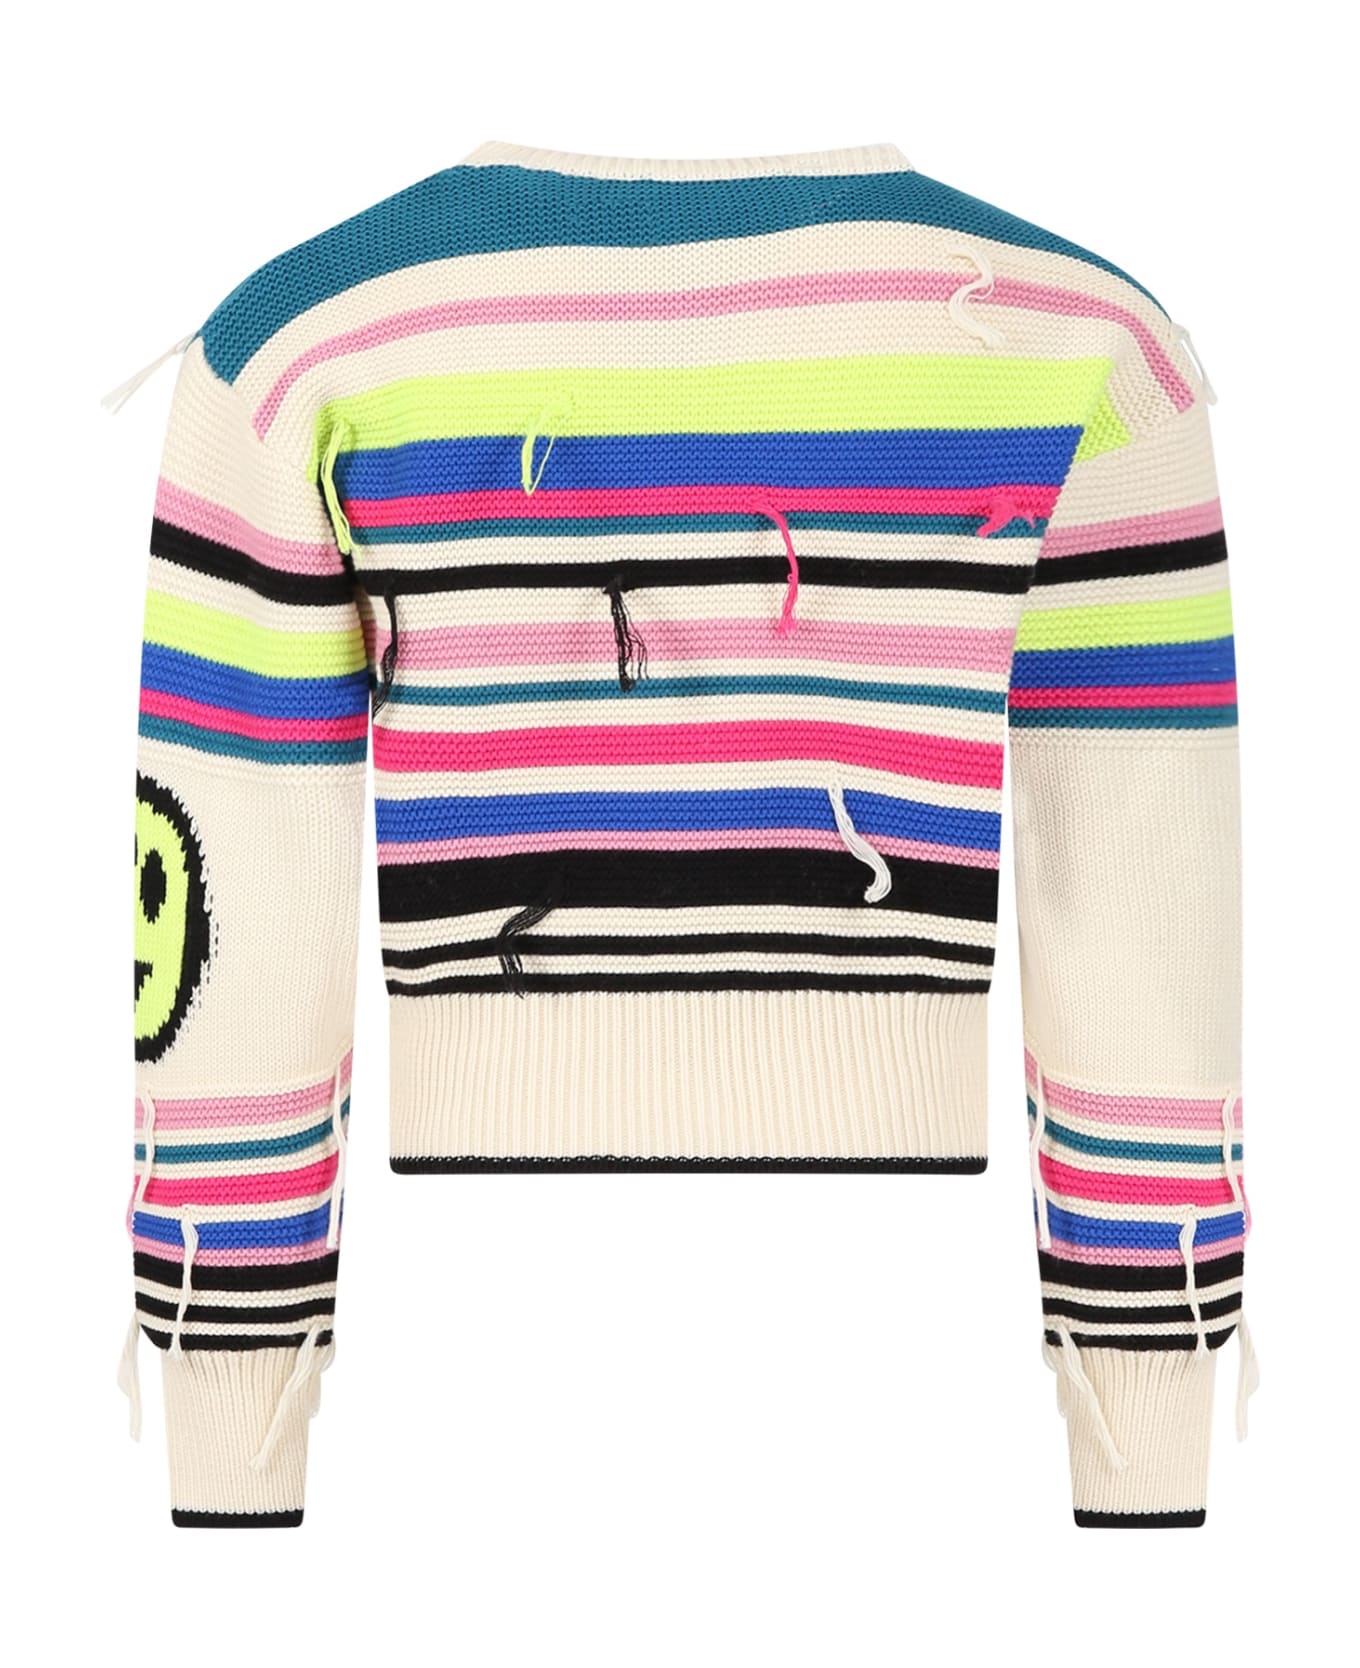 Barrow Multicolor Sweatshirt For Girl With Iconic Smiley - 200